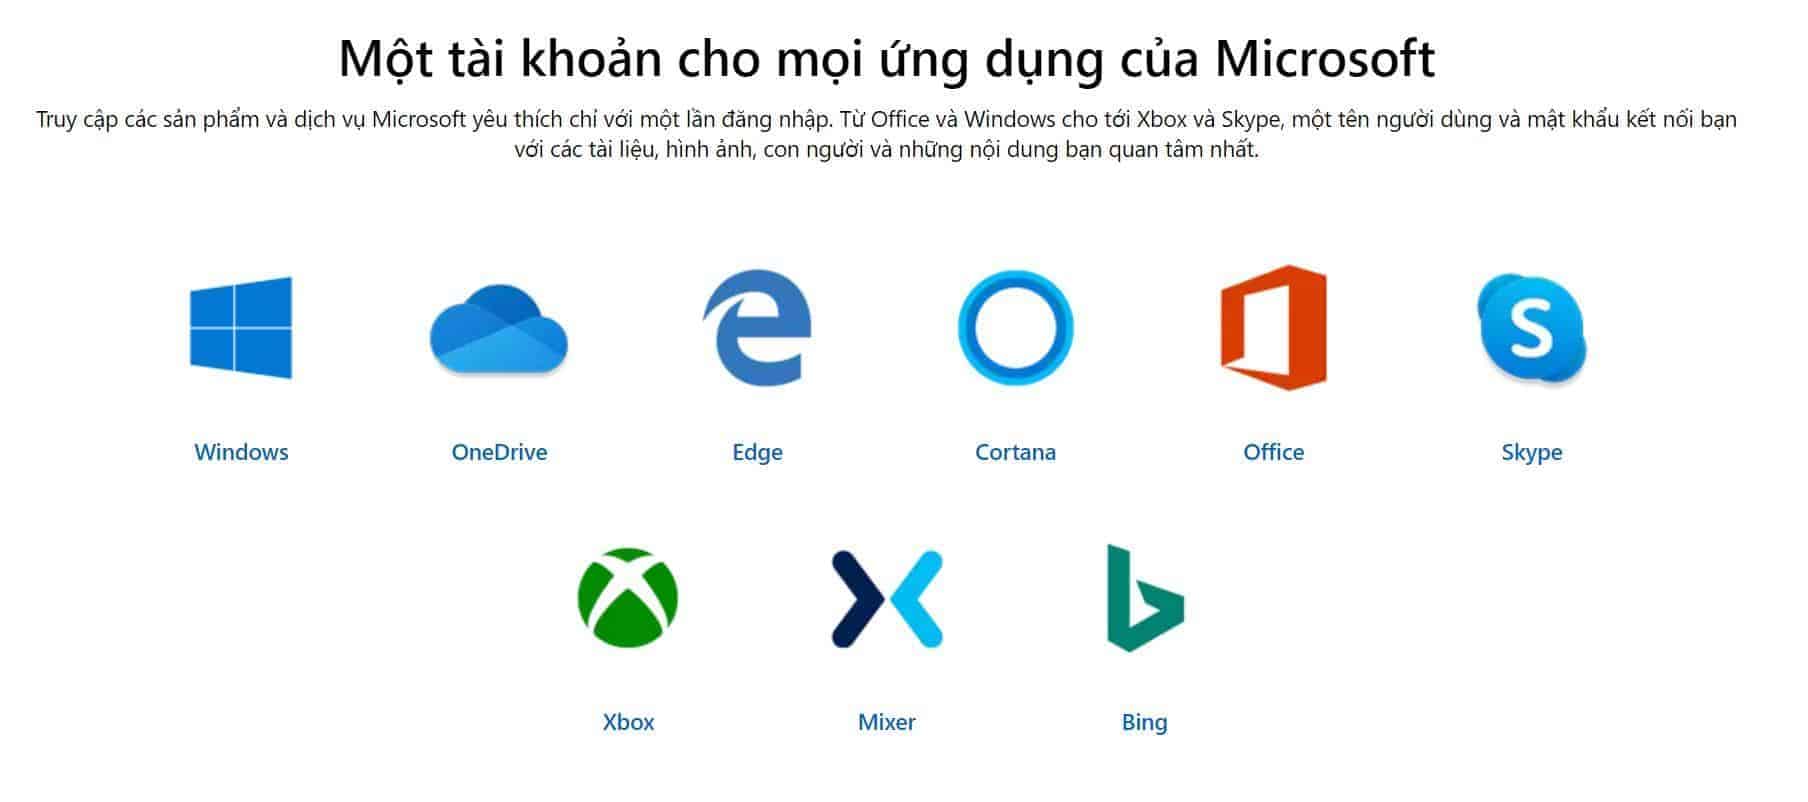 Tài khoản Microsoft là chìa khóa để "mở cửa" mọi ứng dụng từ Microsoft.